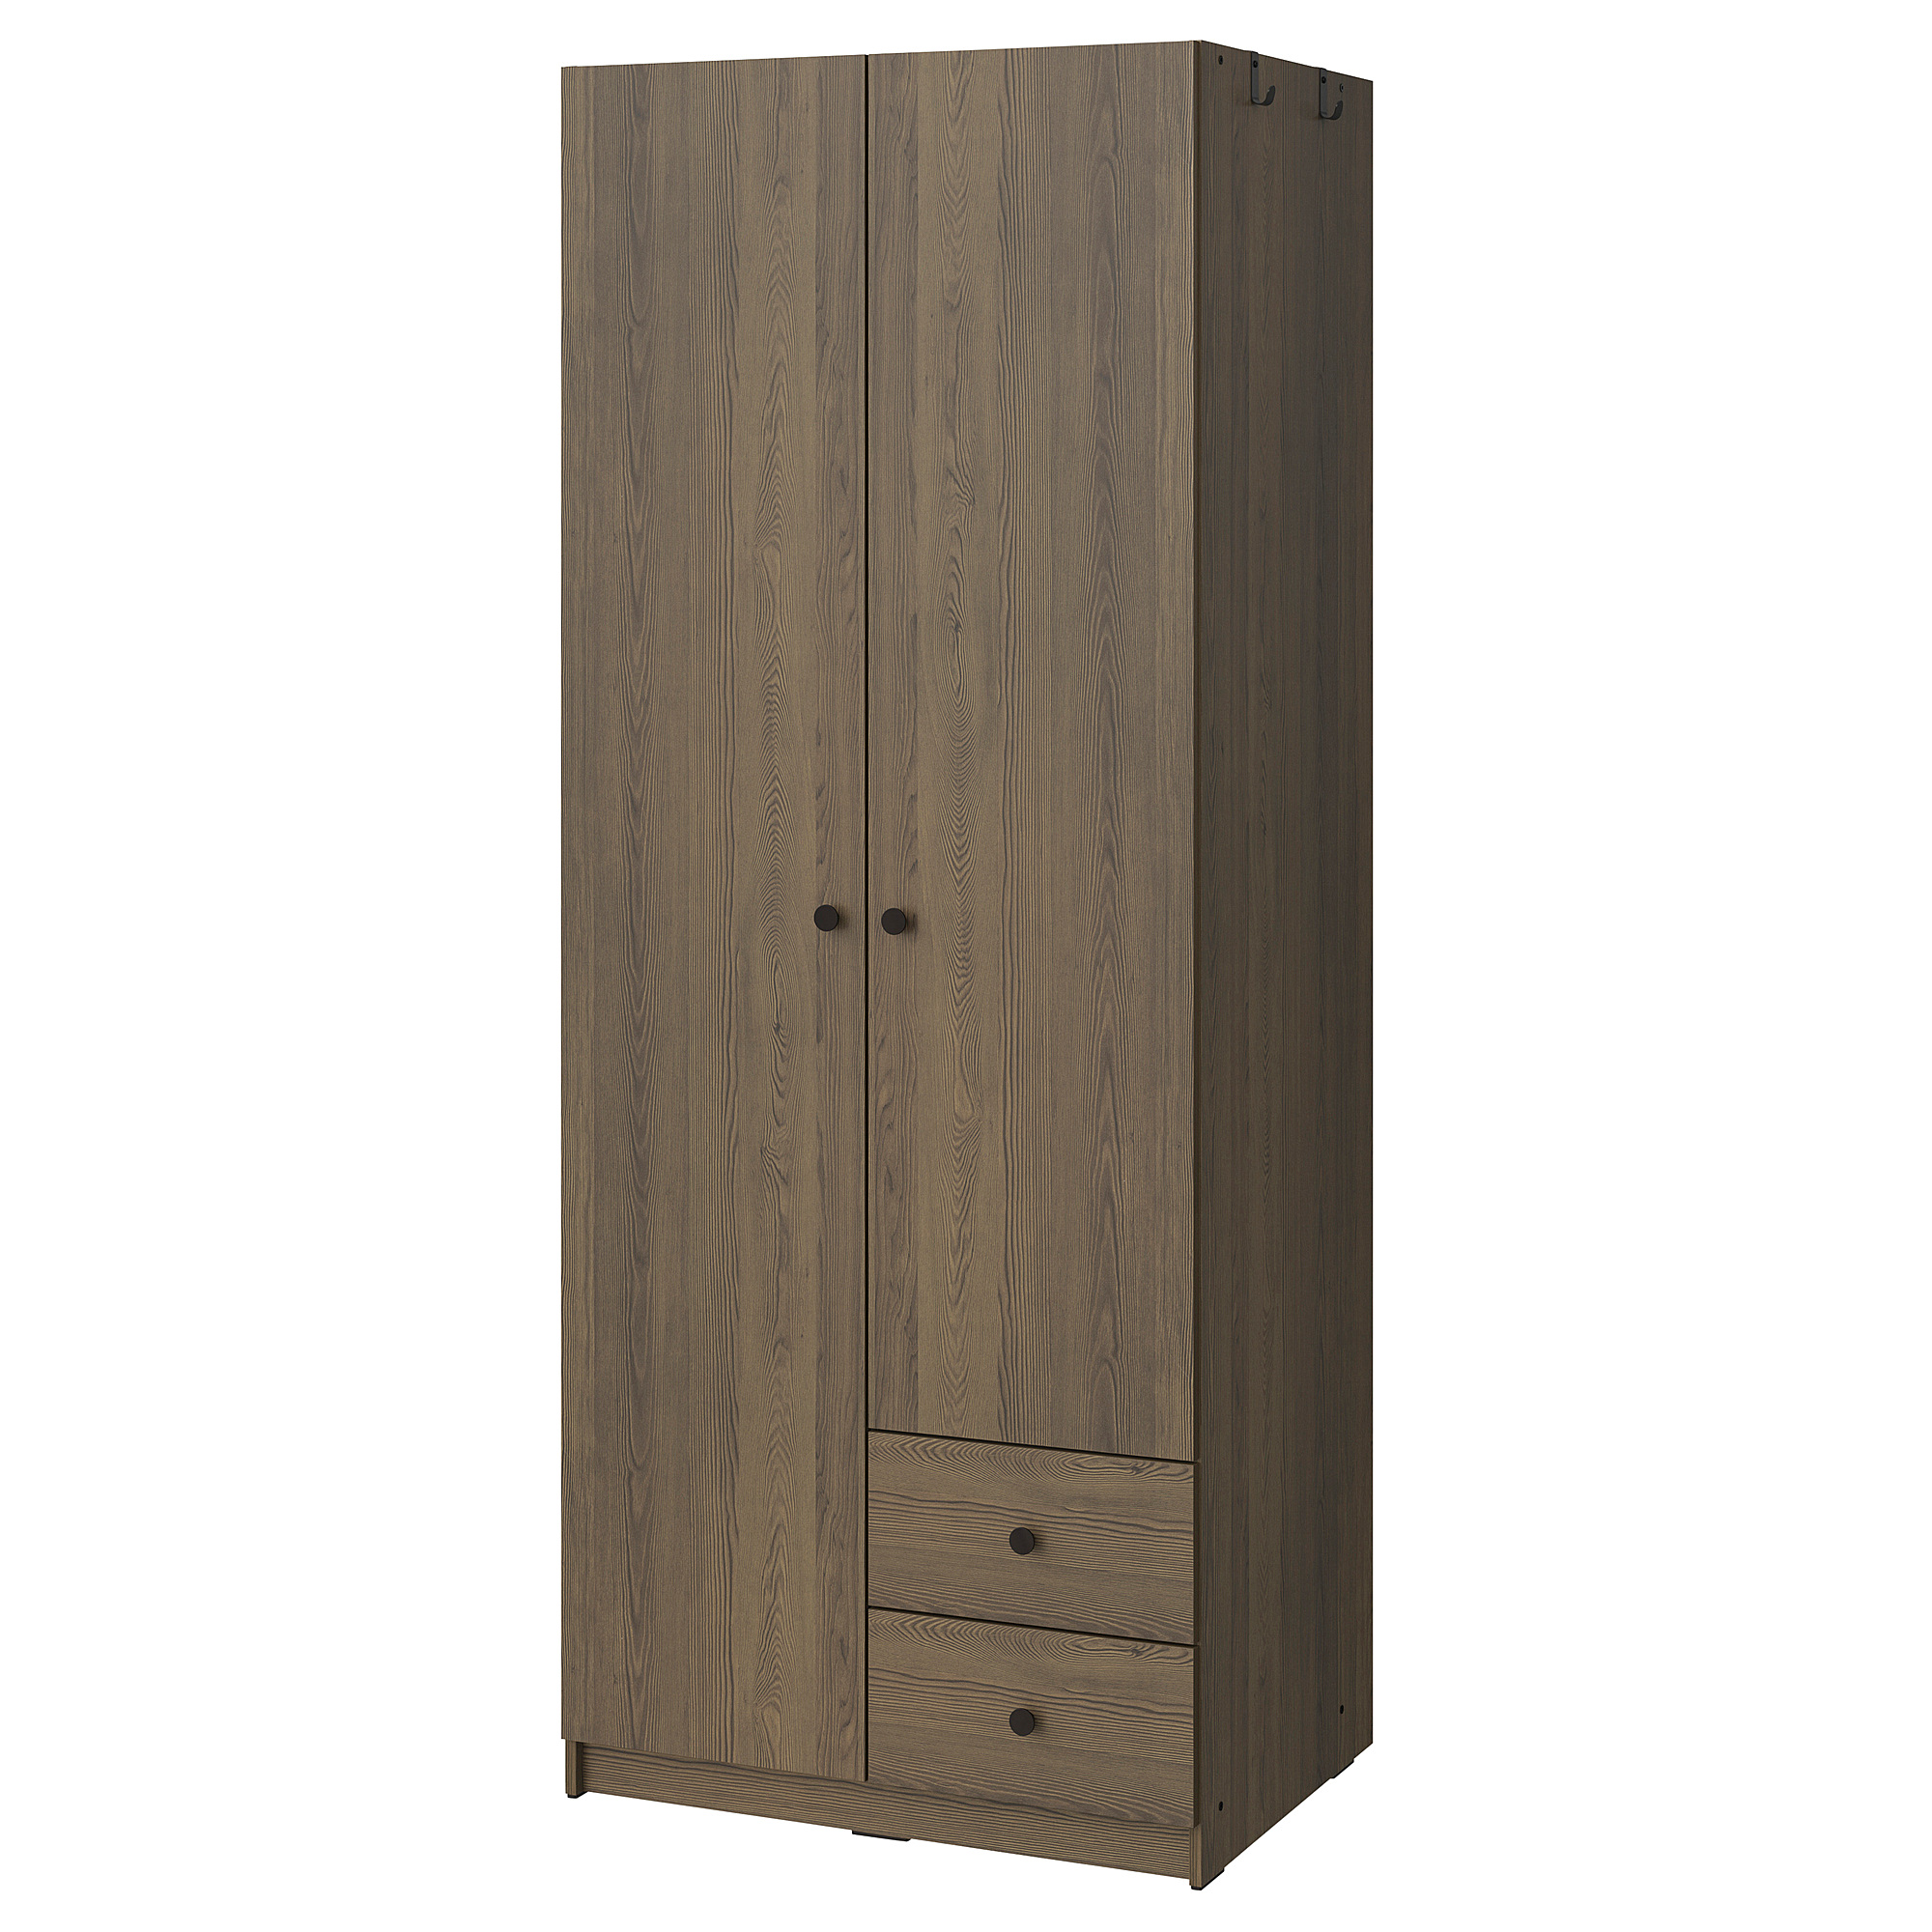 BRUKSVARA wardrobe with 2 doors and 2 drawers